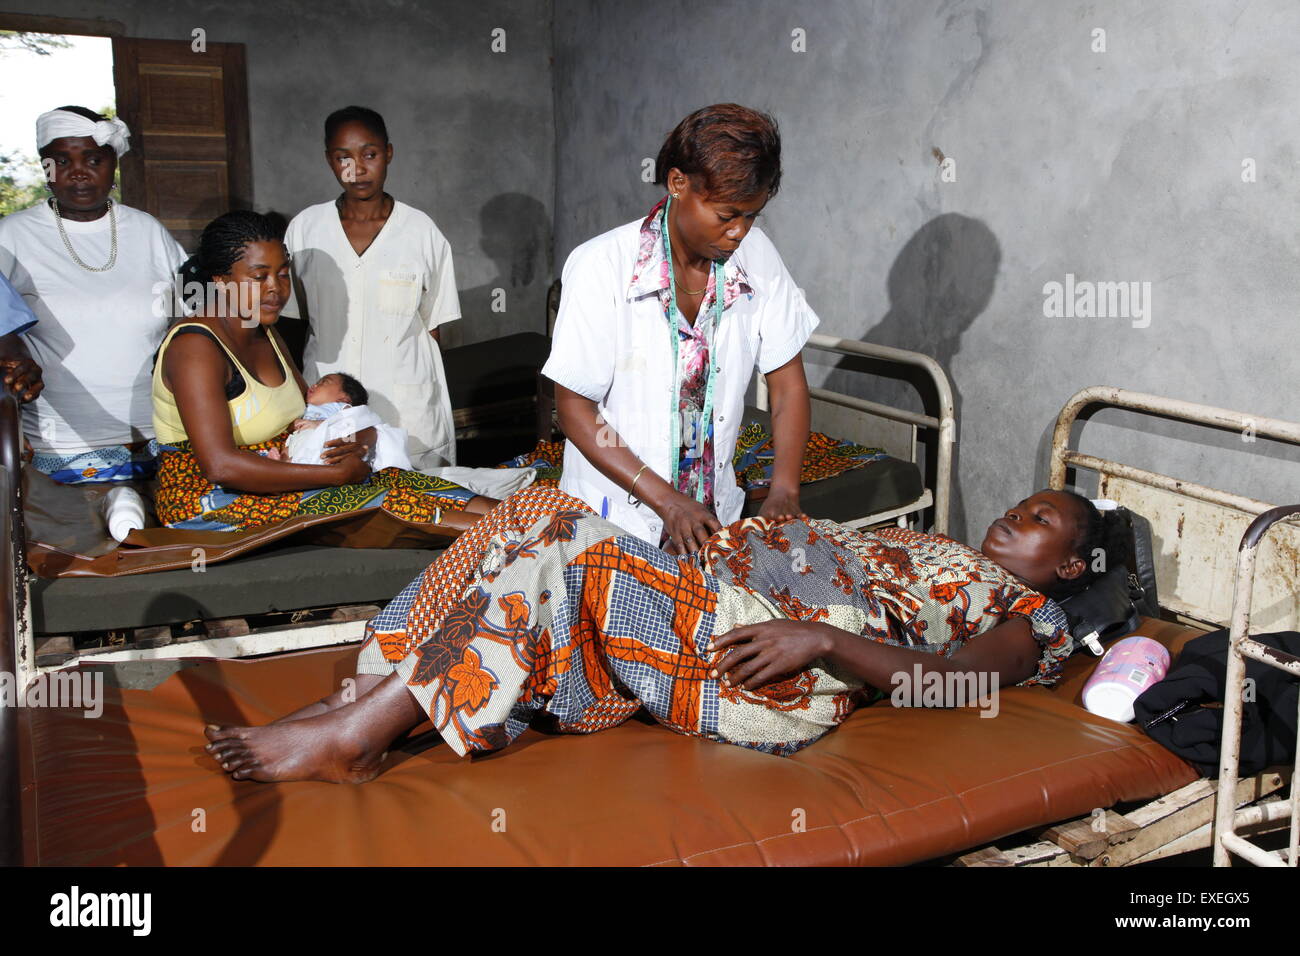 La mujer embarazada que está siendo examinado por un médico, en el hospital, Kawongo Matamba-Solo, distrito, en la provincia de Bandundu, Congo-Brazzaville Foto de stock